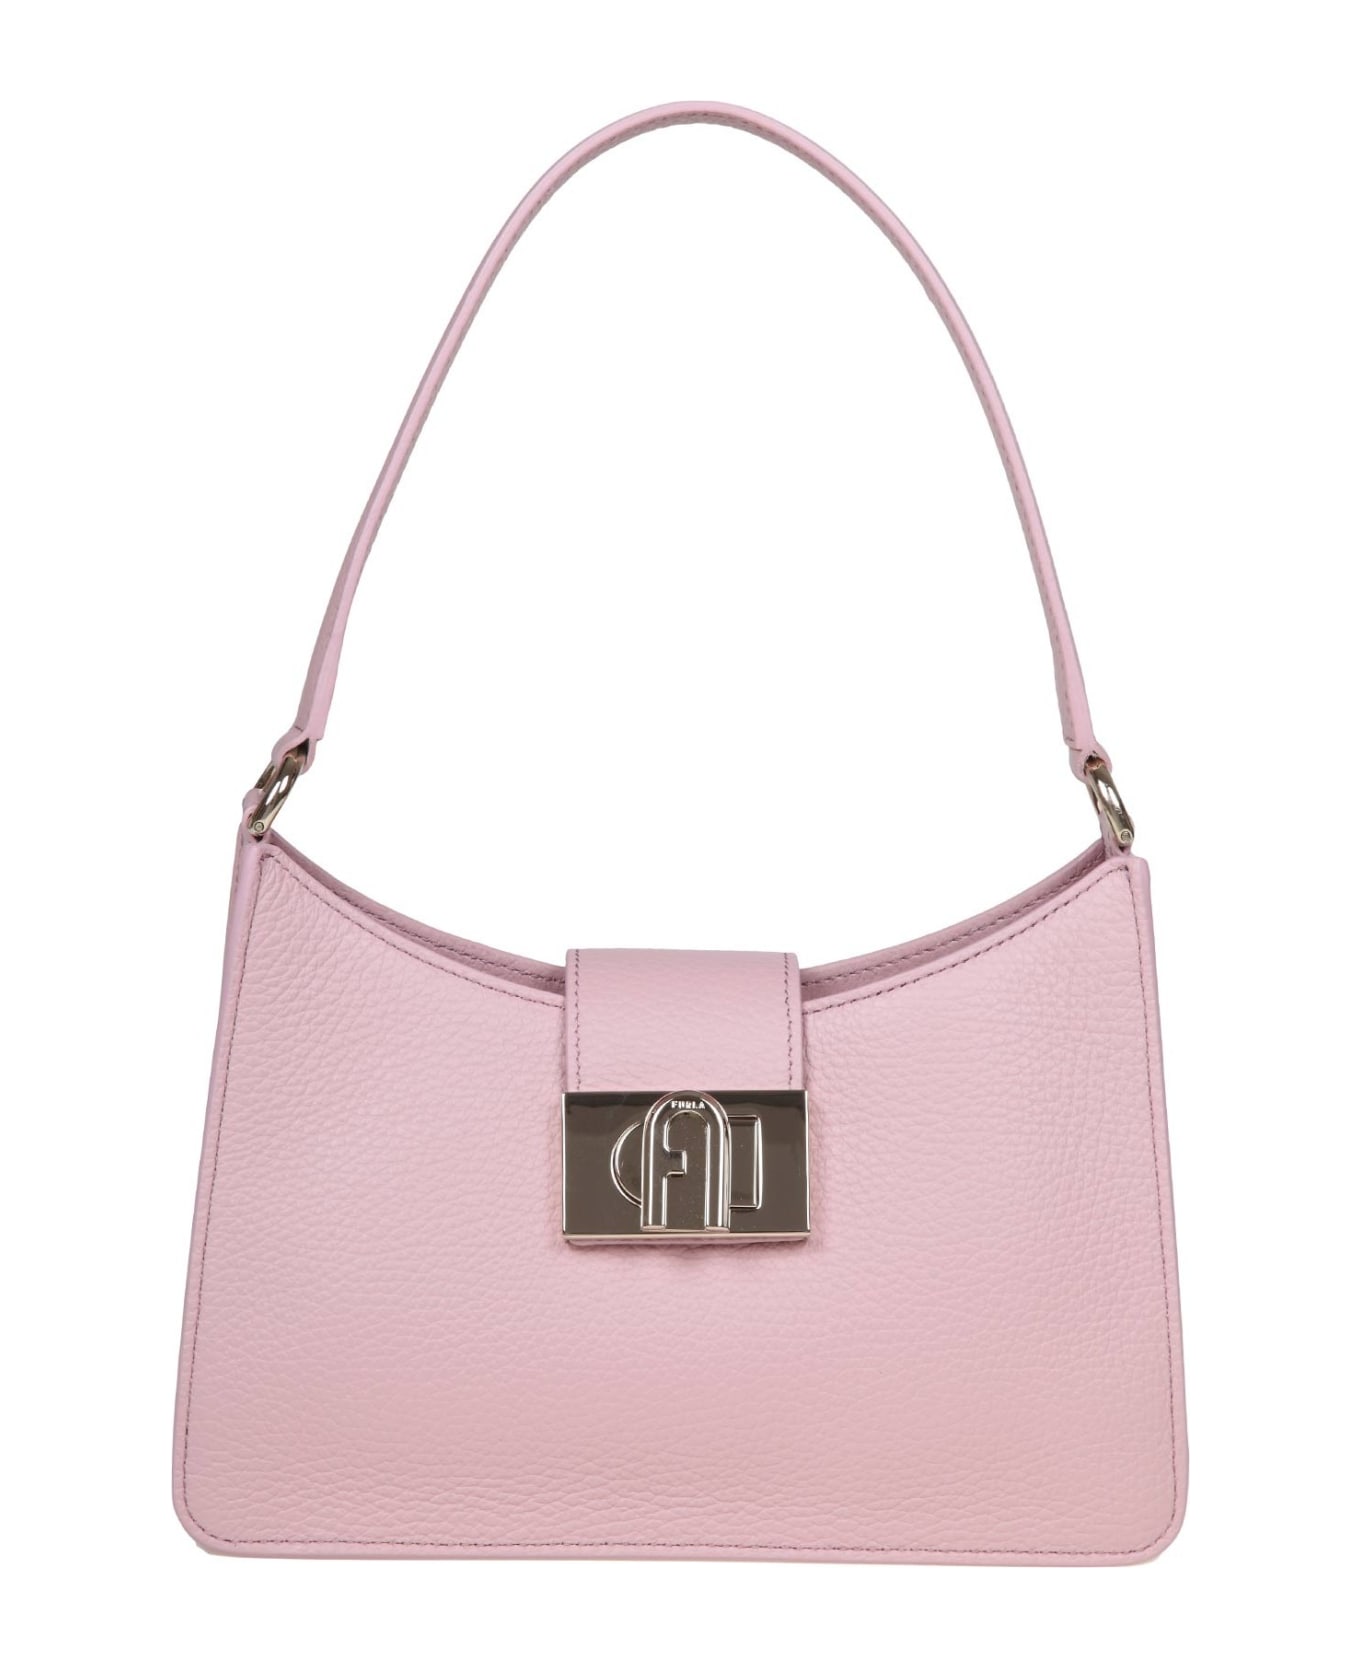 Furla 1927 S Shoulder Bag In Pink Soft Leather - Alba